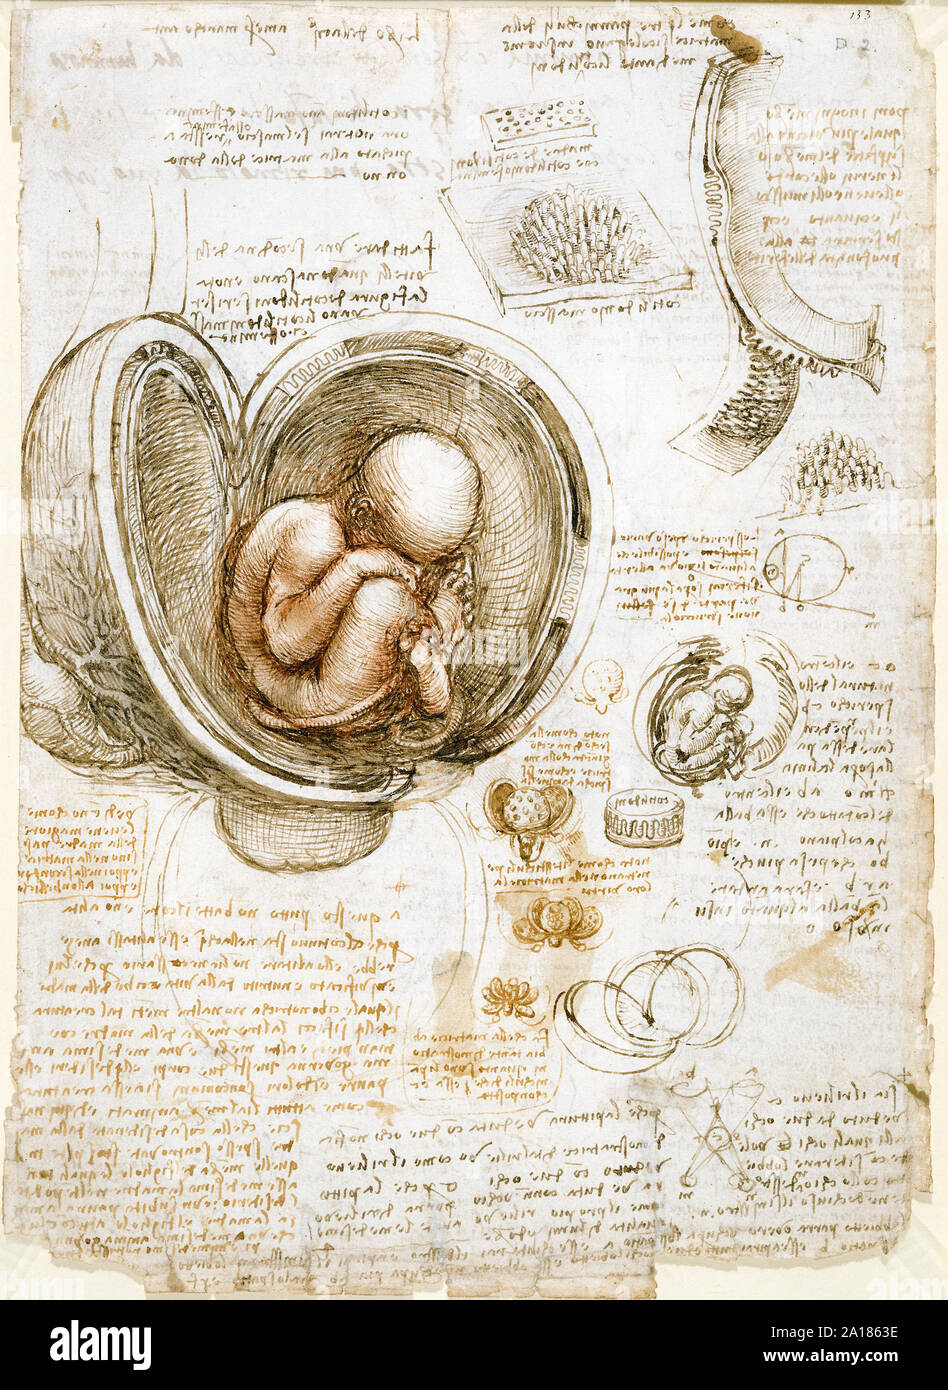 Studi del feto nel grembo di Leonardo da Vinci (1452-1519) circa 1511 che mostra il feto umano in una posizione podalica all'interno di un dissezionati utero. Foto Stock